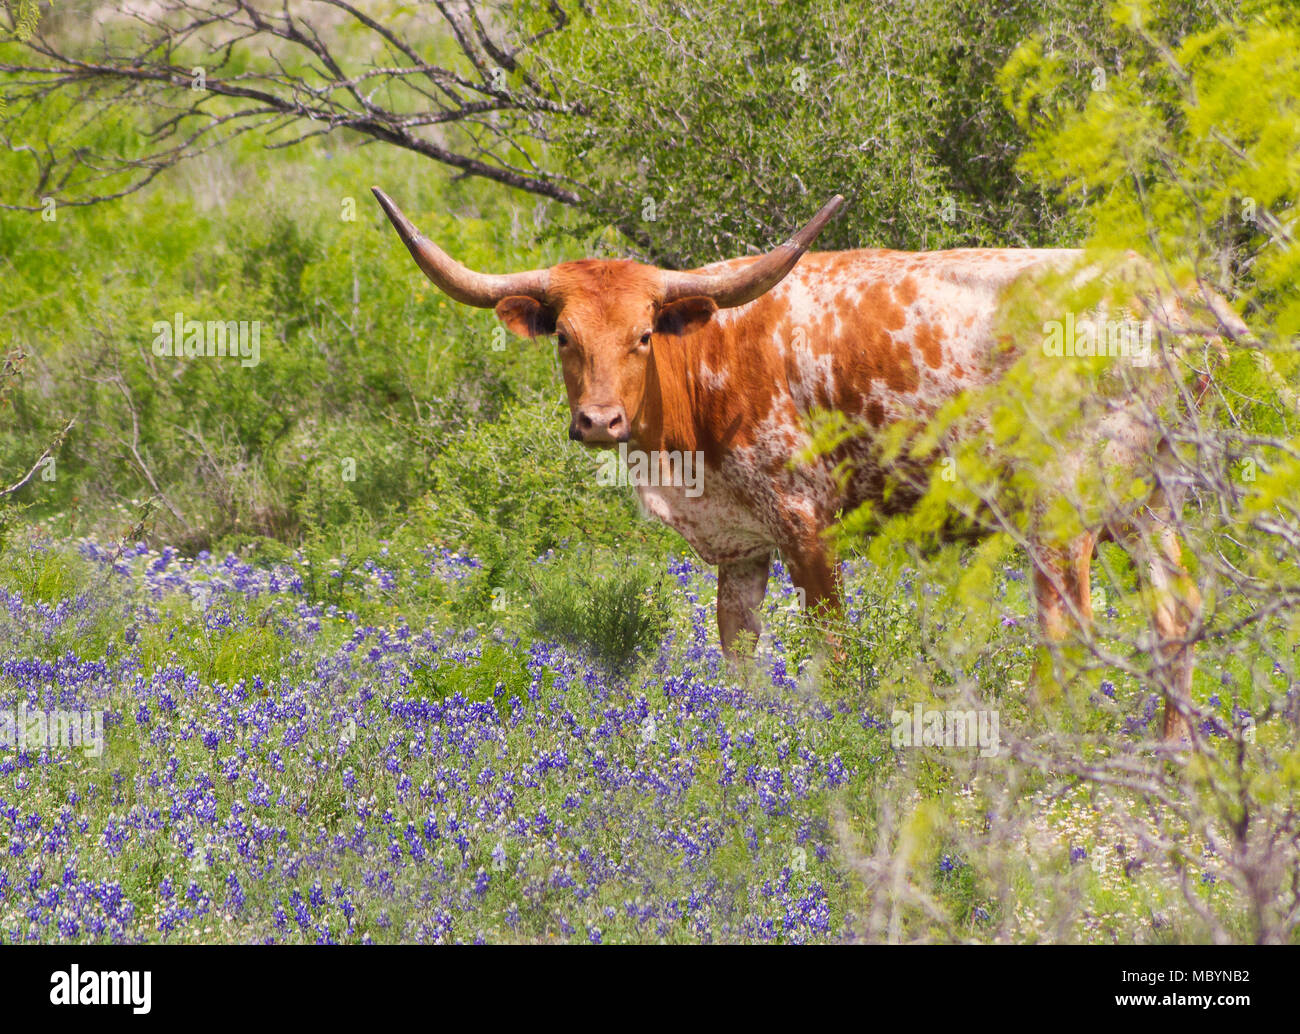 Dos iconos de Texas - Texas Longhorn (Bos taurus) en Texas Bluebonnets permanente (Lupinus texensis). Foto de stock